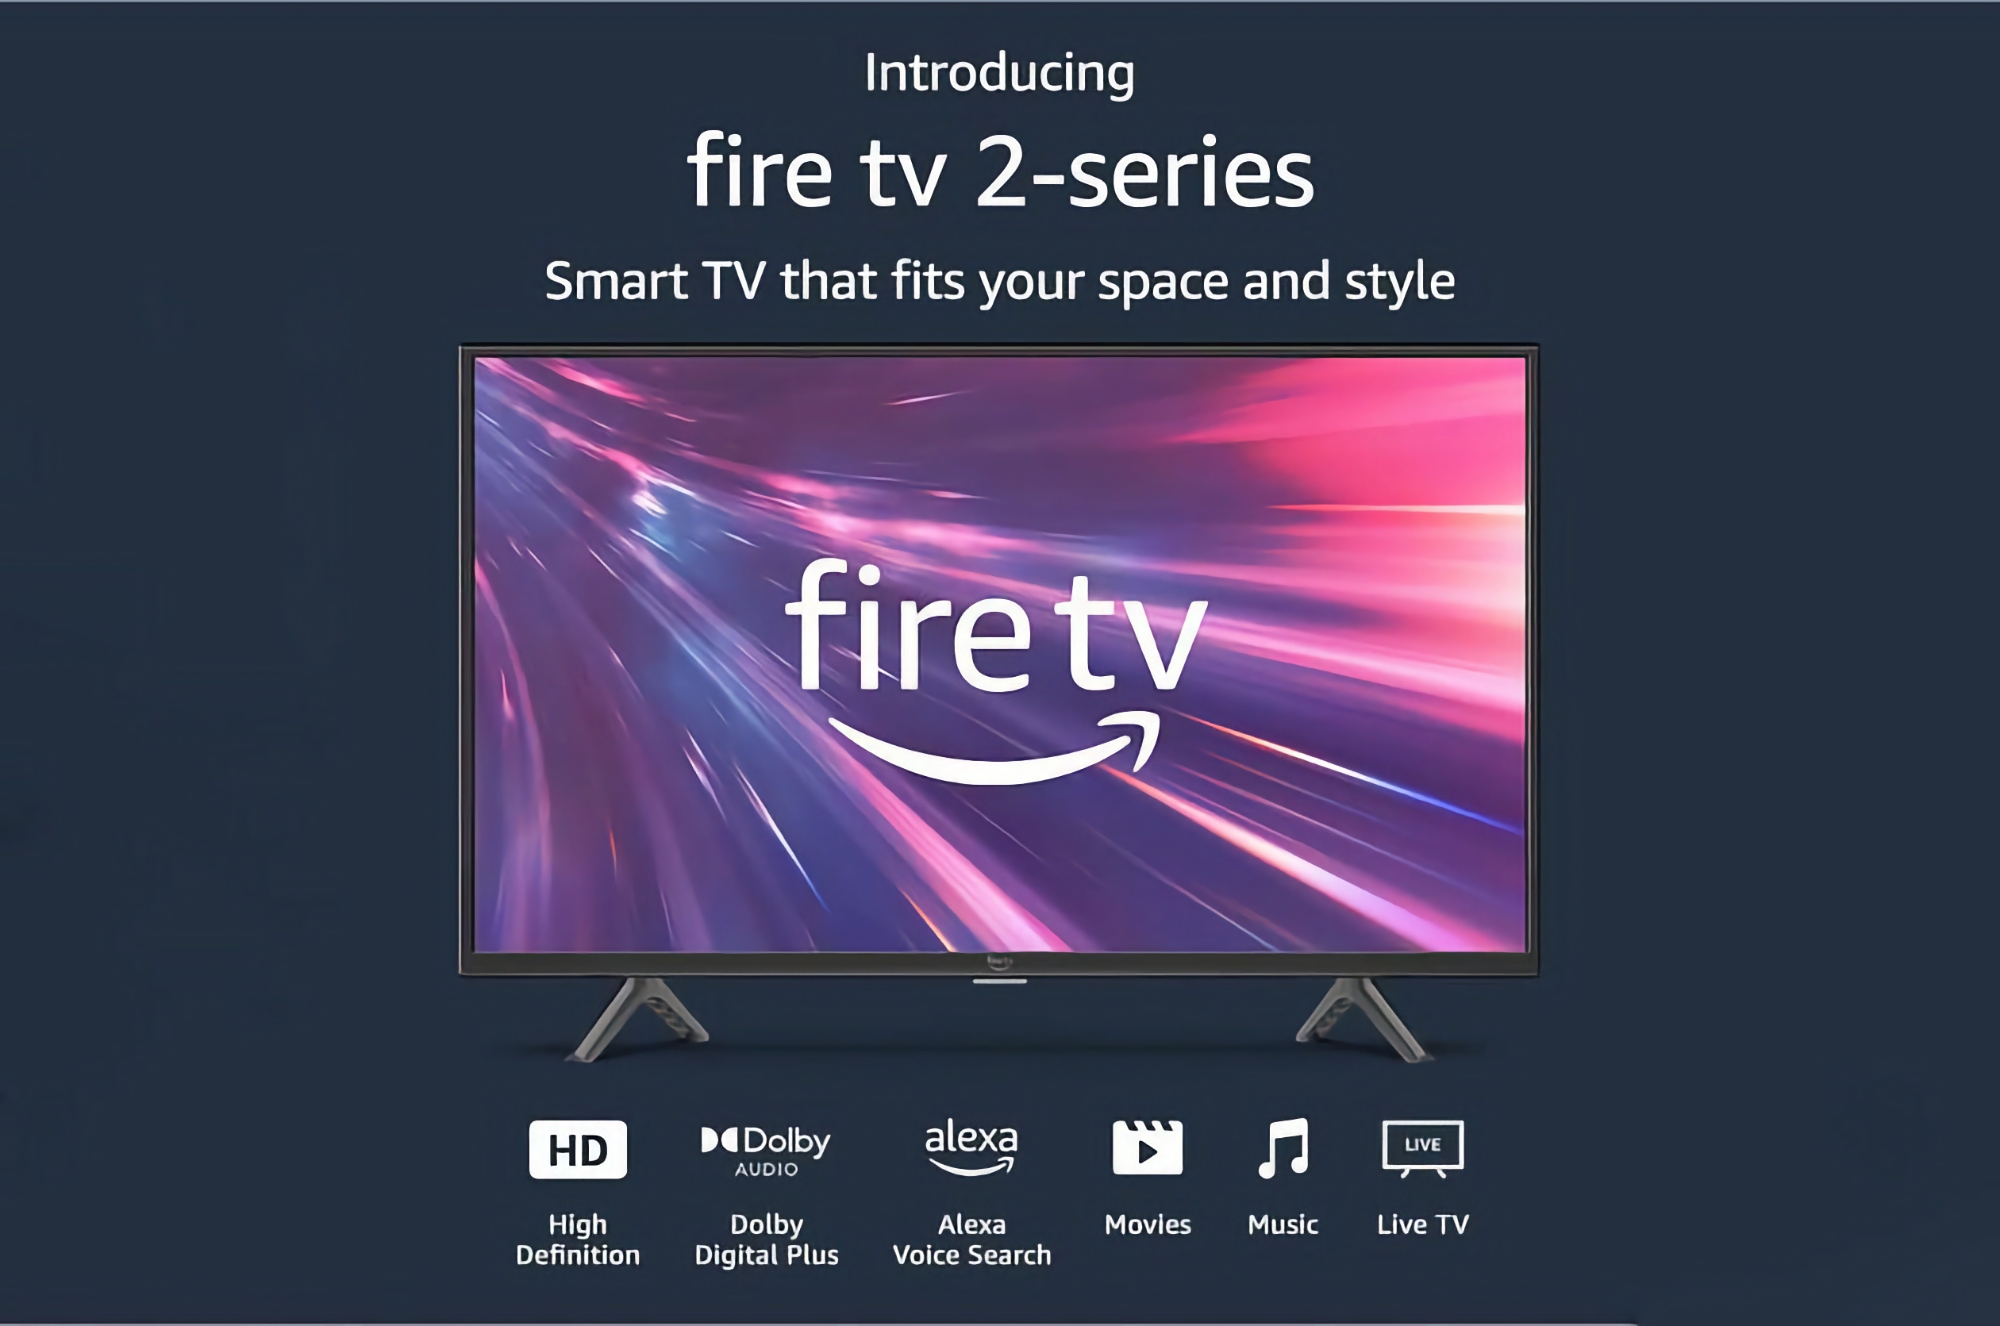 Amazon Fire TV 2 med en 32-tommers skærm med 40% rabat